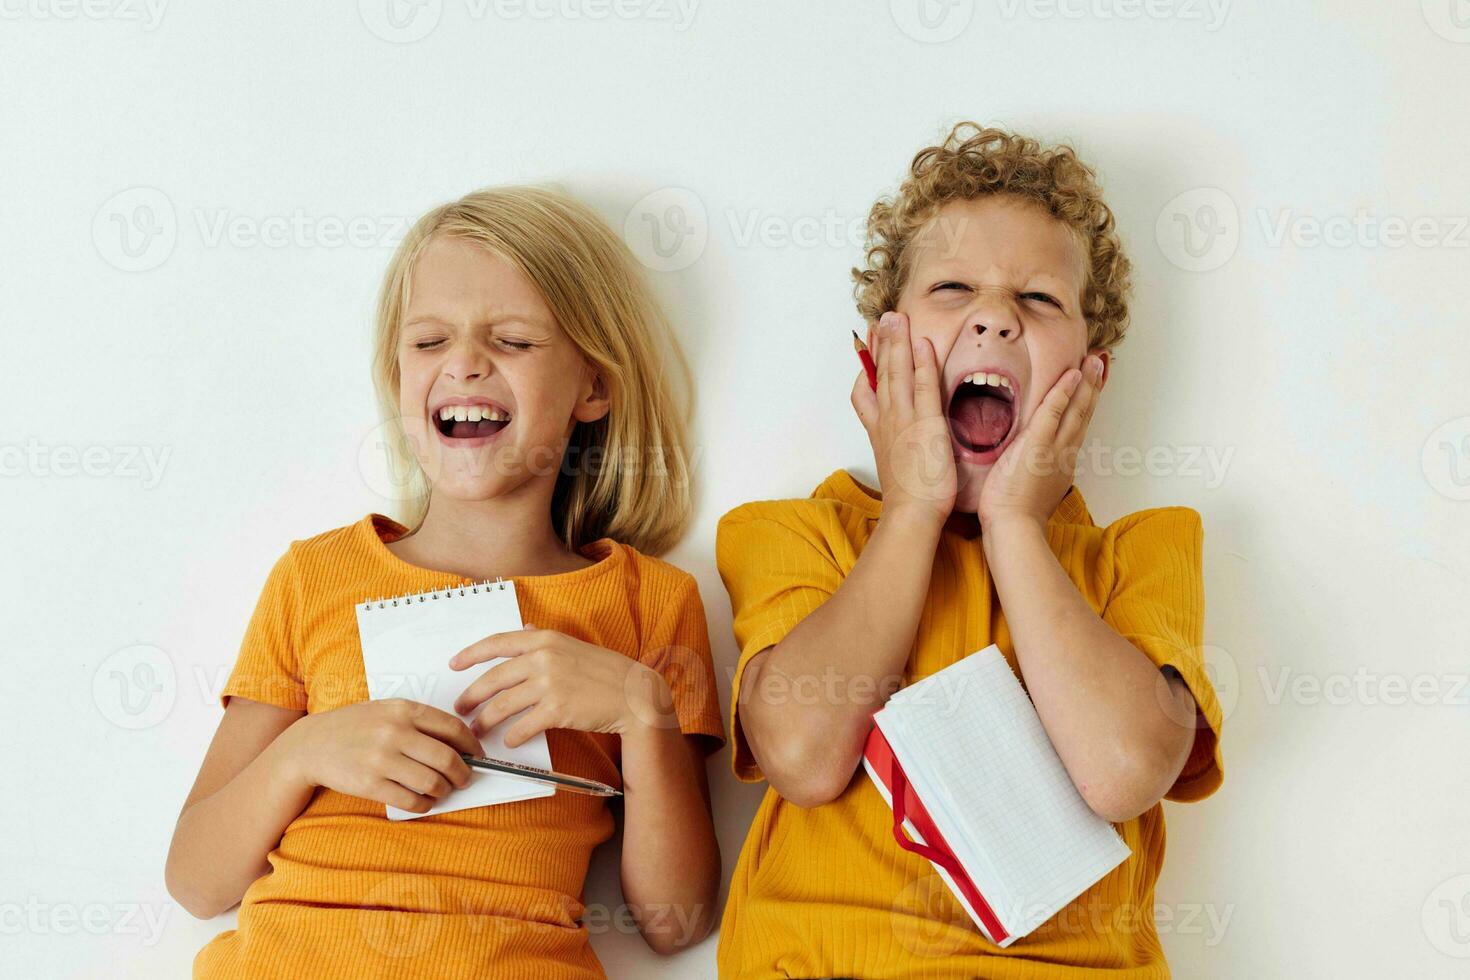 dois alegre crianças infância entretenimento desenhando infância estilo de vida inalterado foto